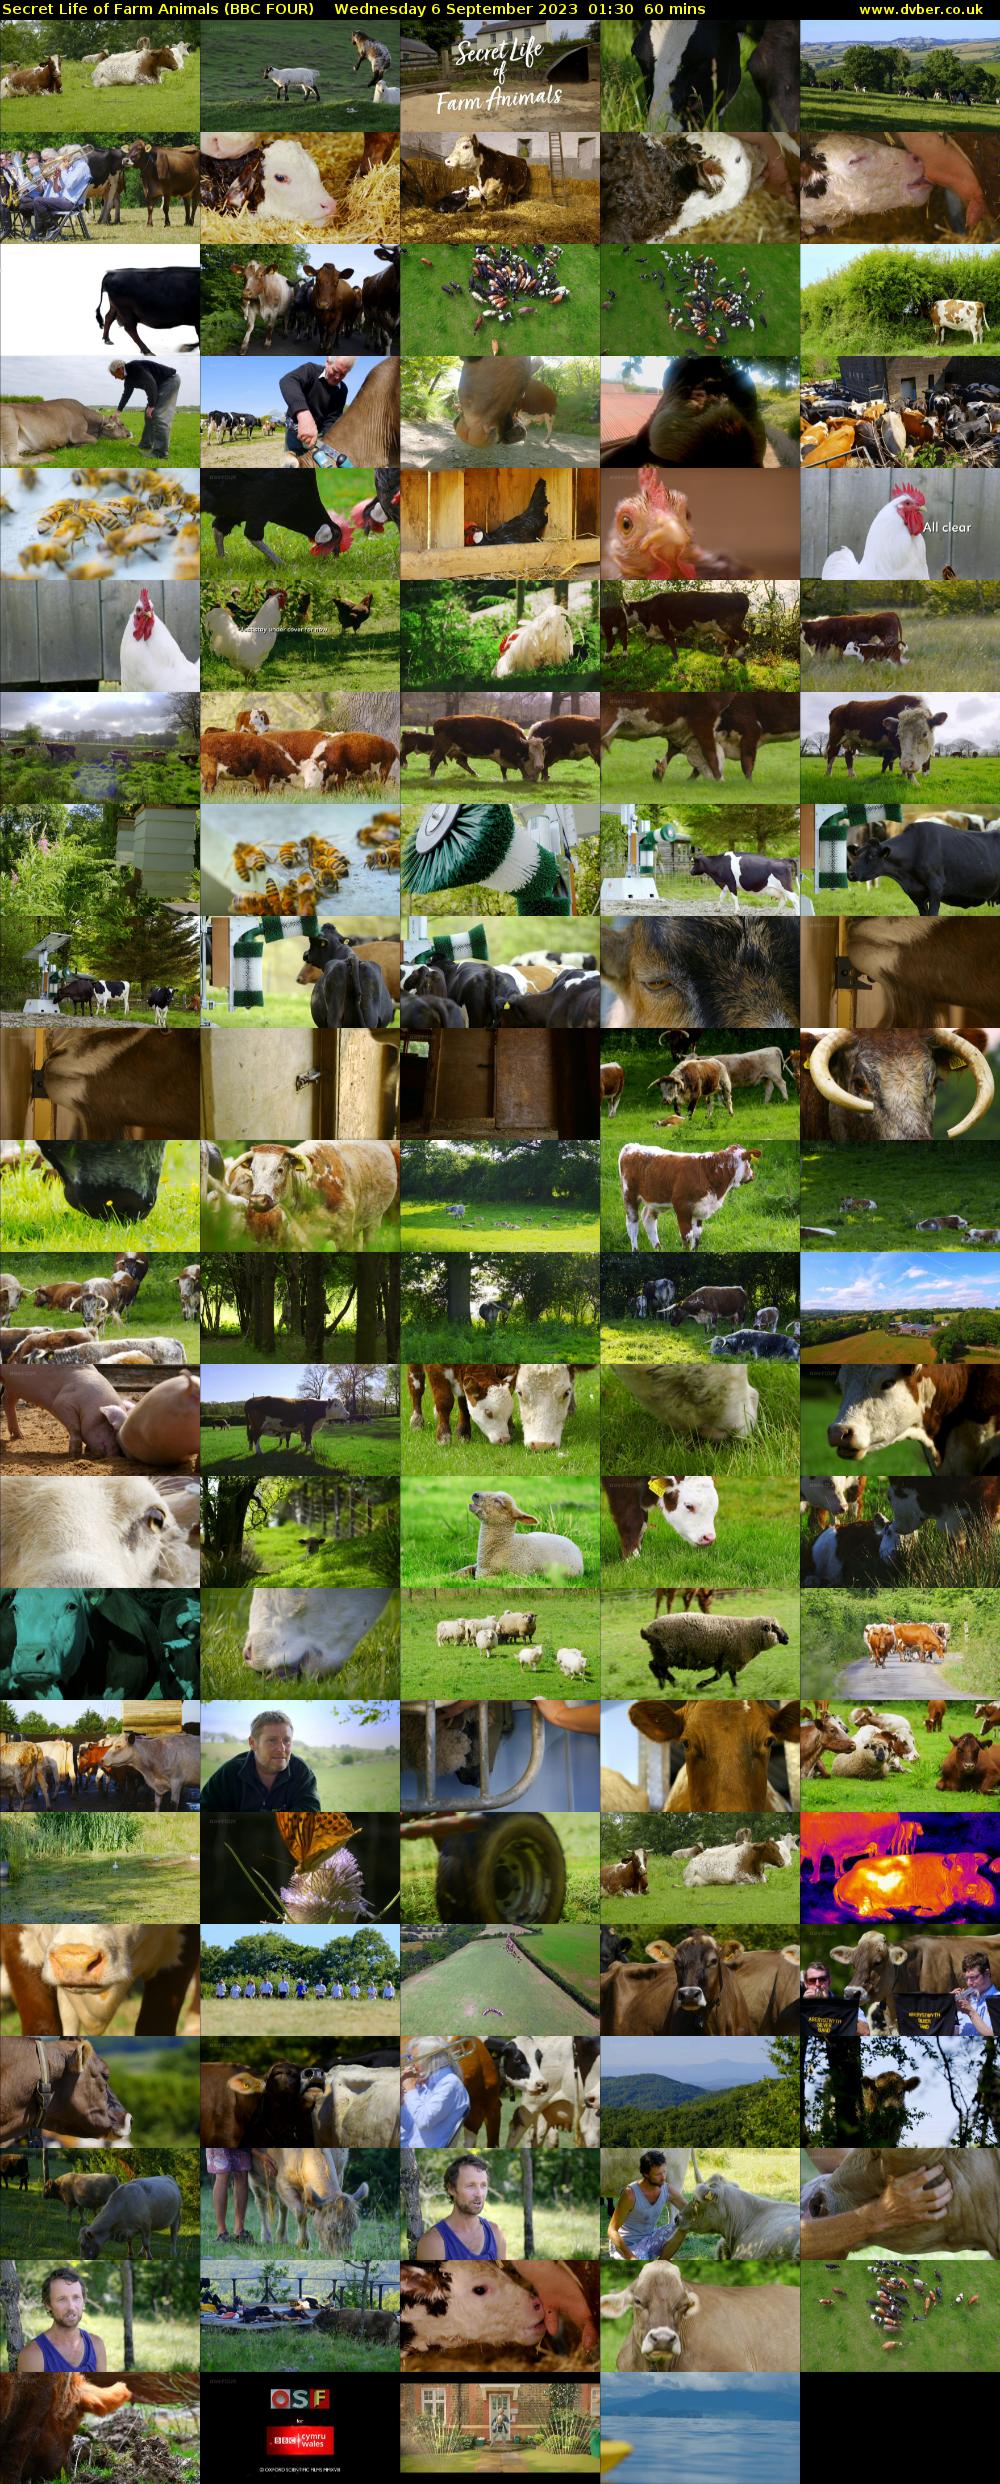 Secret Life of Farm Animals (BBC FOUR) Wednesday 6 September 2023 01:30 - 02:30